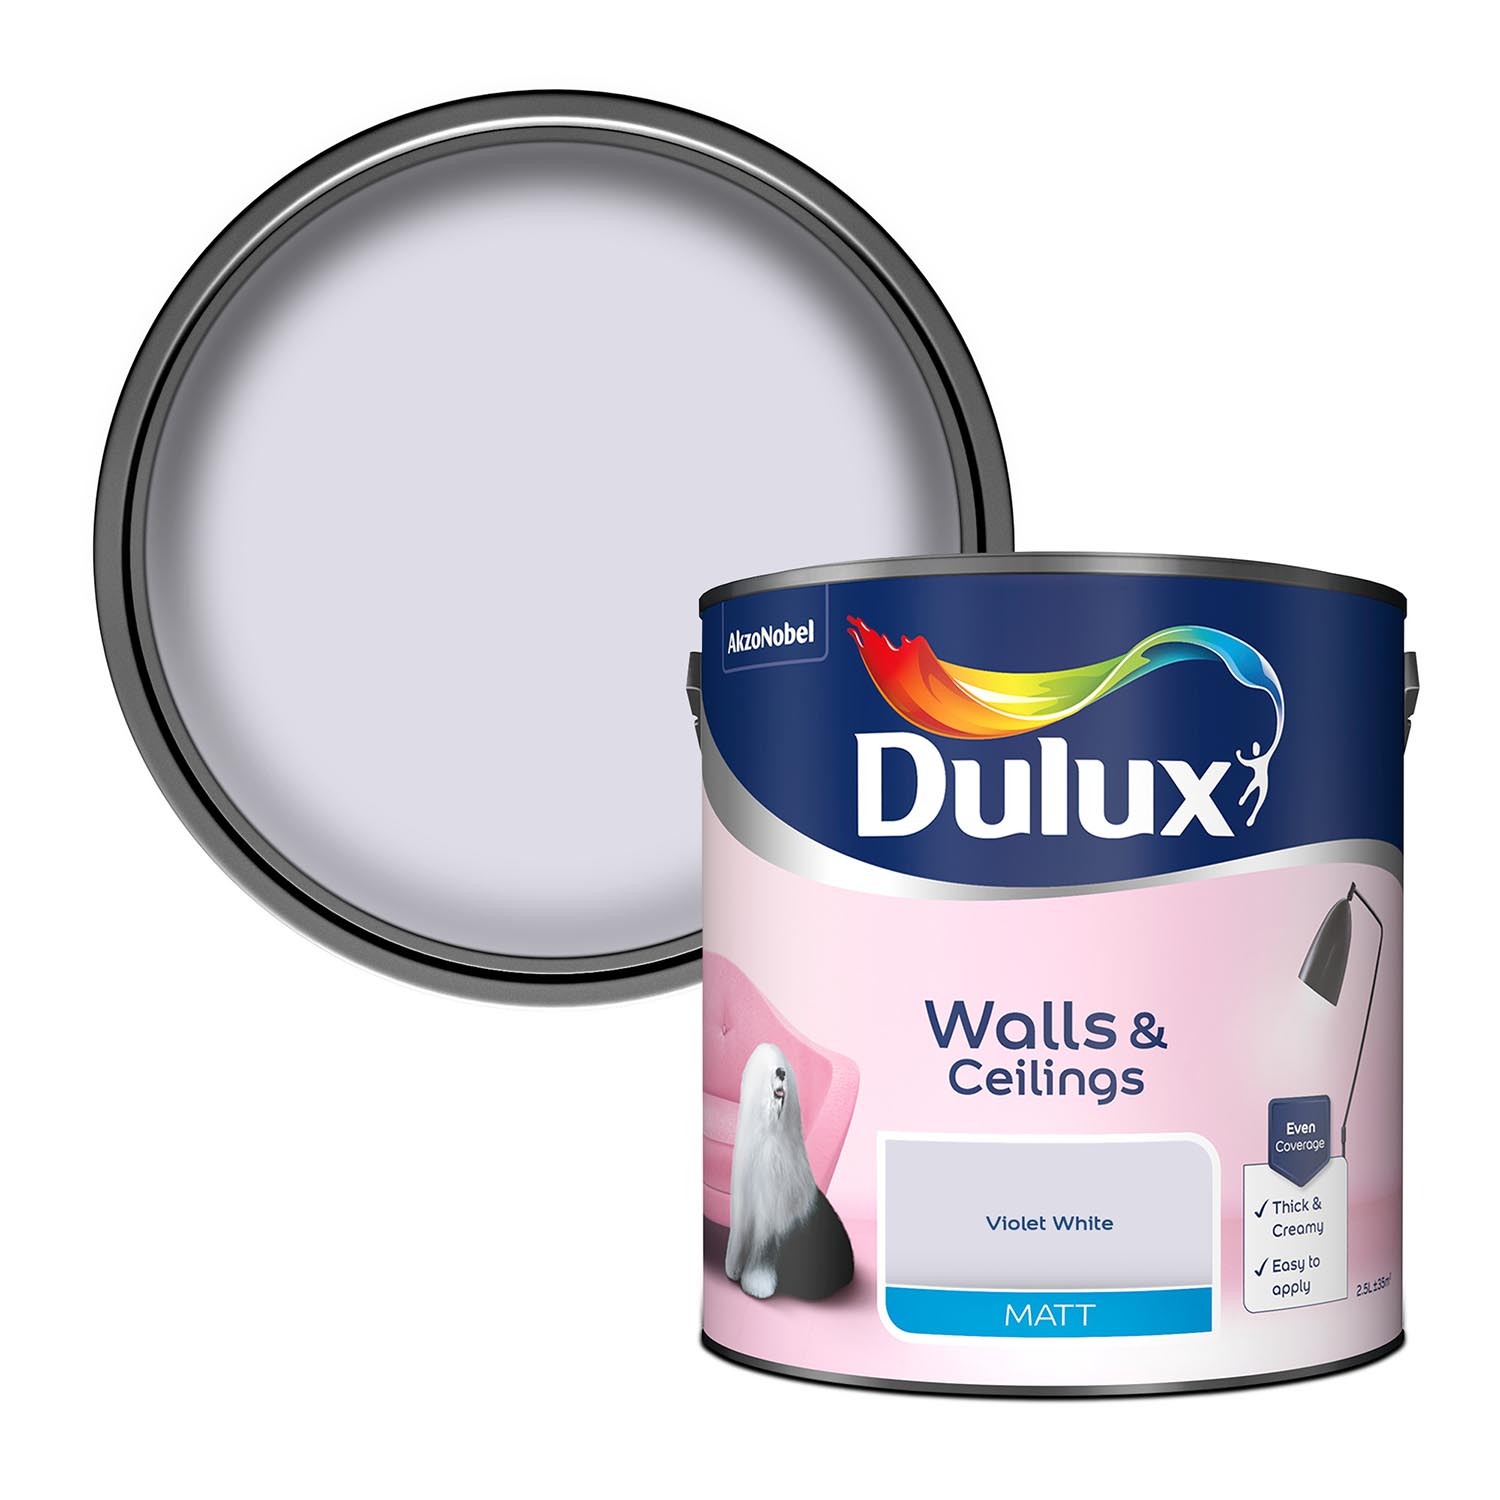 Dulux Walls & Ceilings Violet White Matt Emulsion Paint 2.5L Image 1